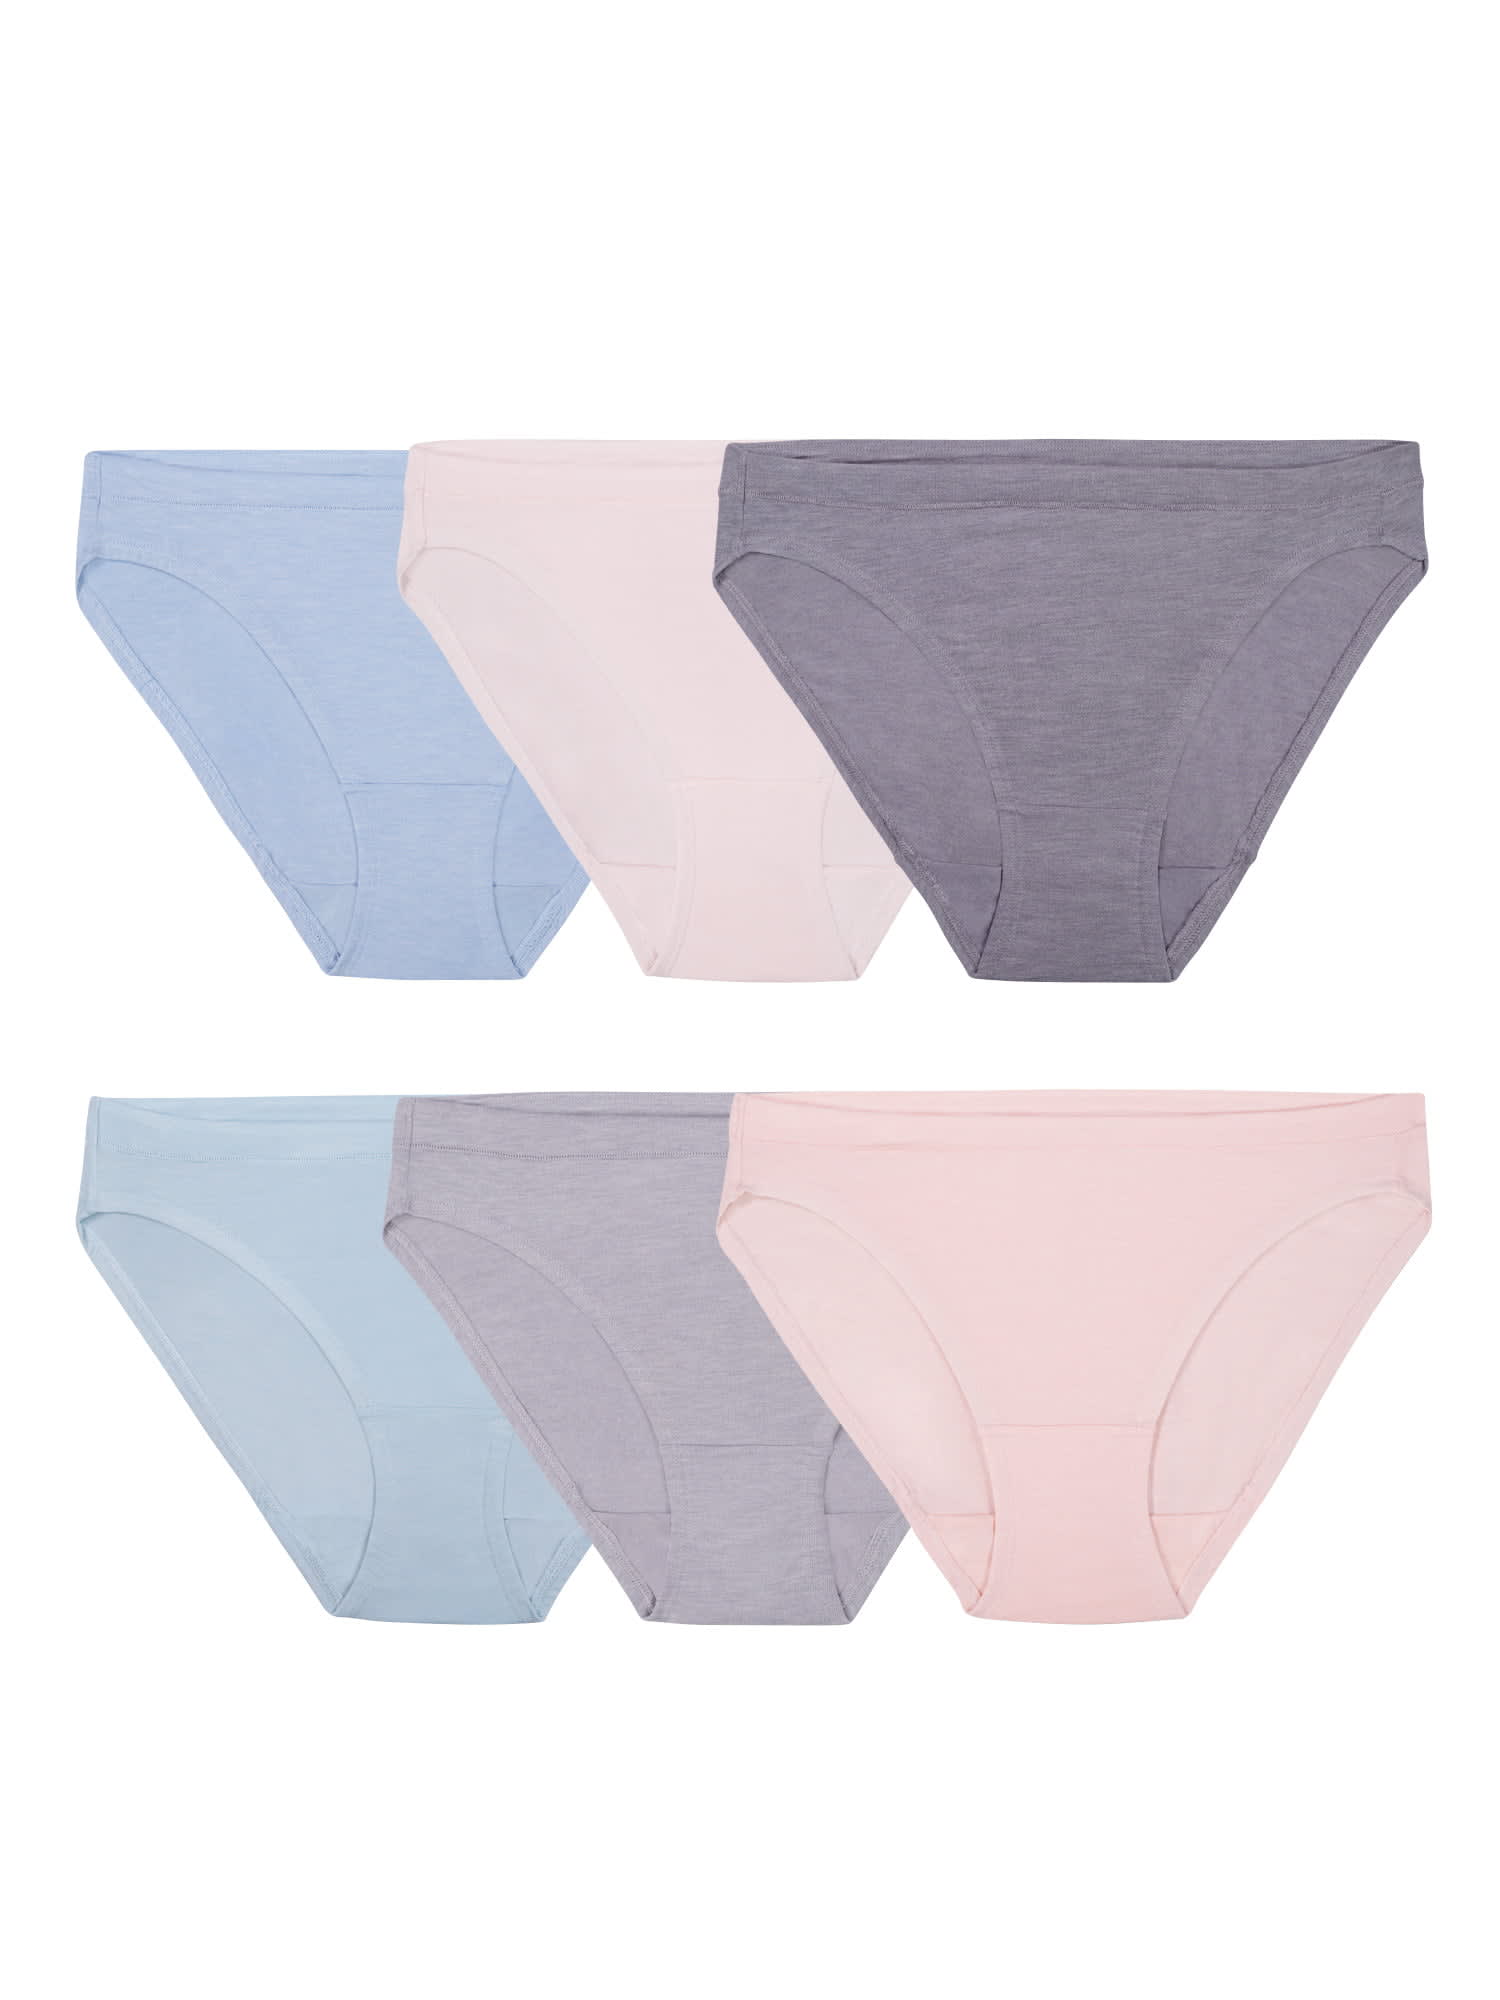 Hanes Women's Cotton Brief Underwear 6-Pack, Cool Comfort Technology